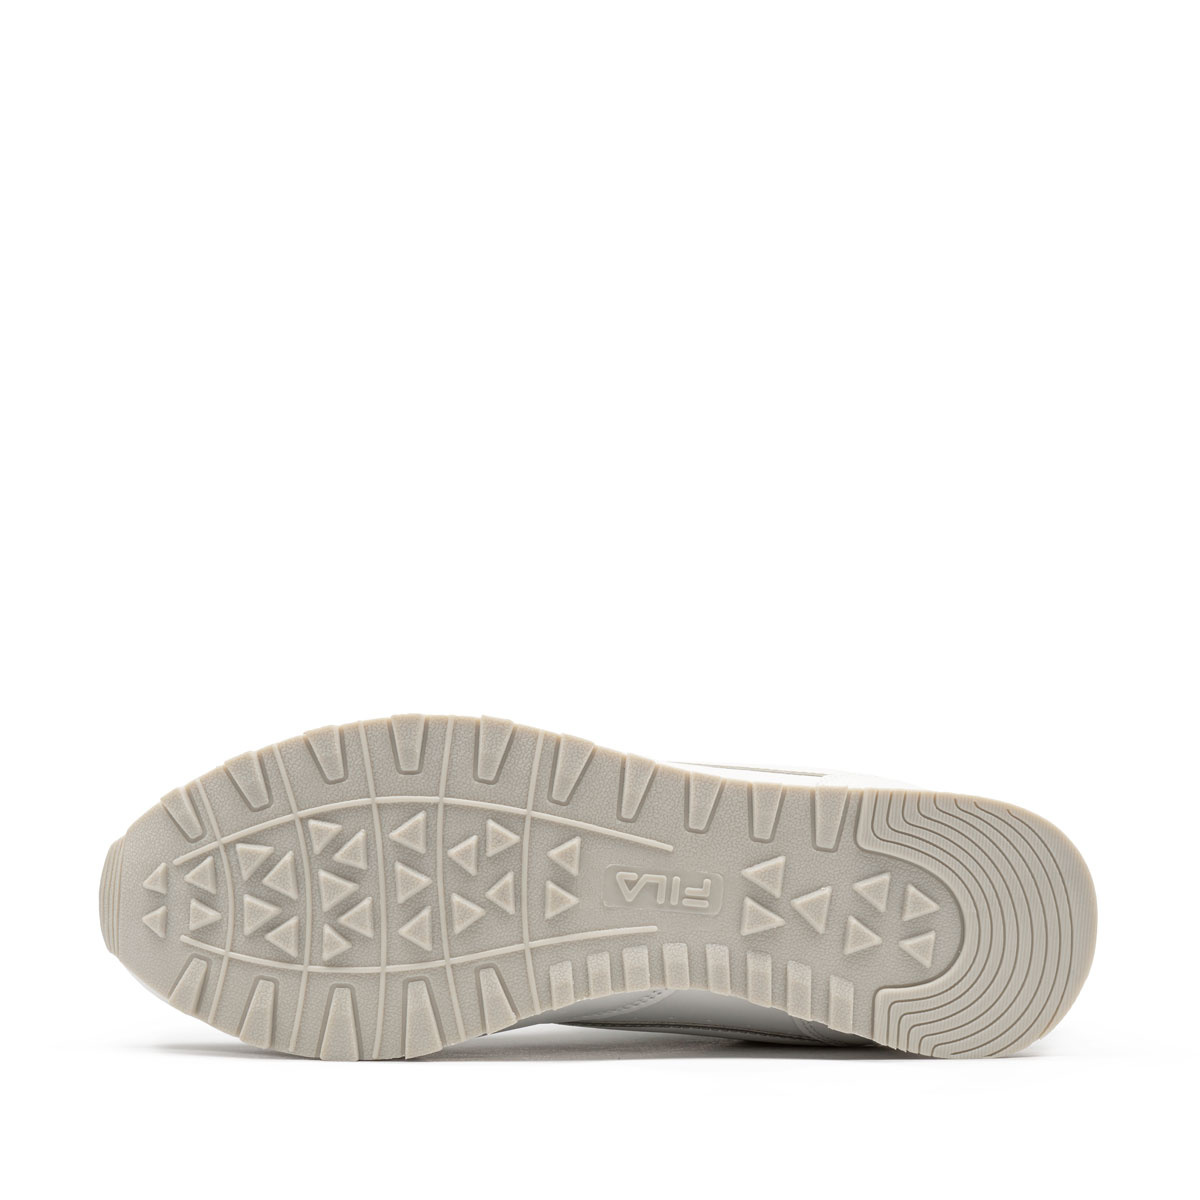 Fila Orbit Low Дамски спортни обувки 1010308-1FG